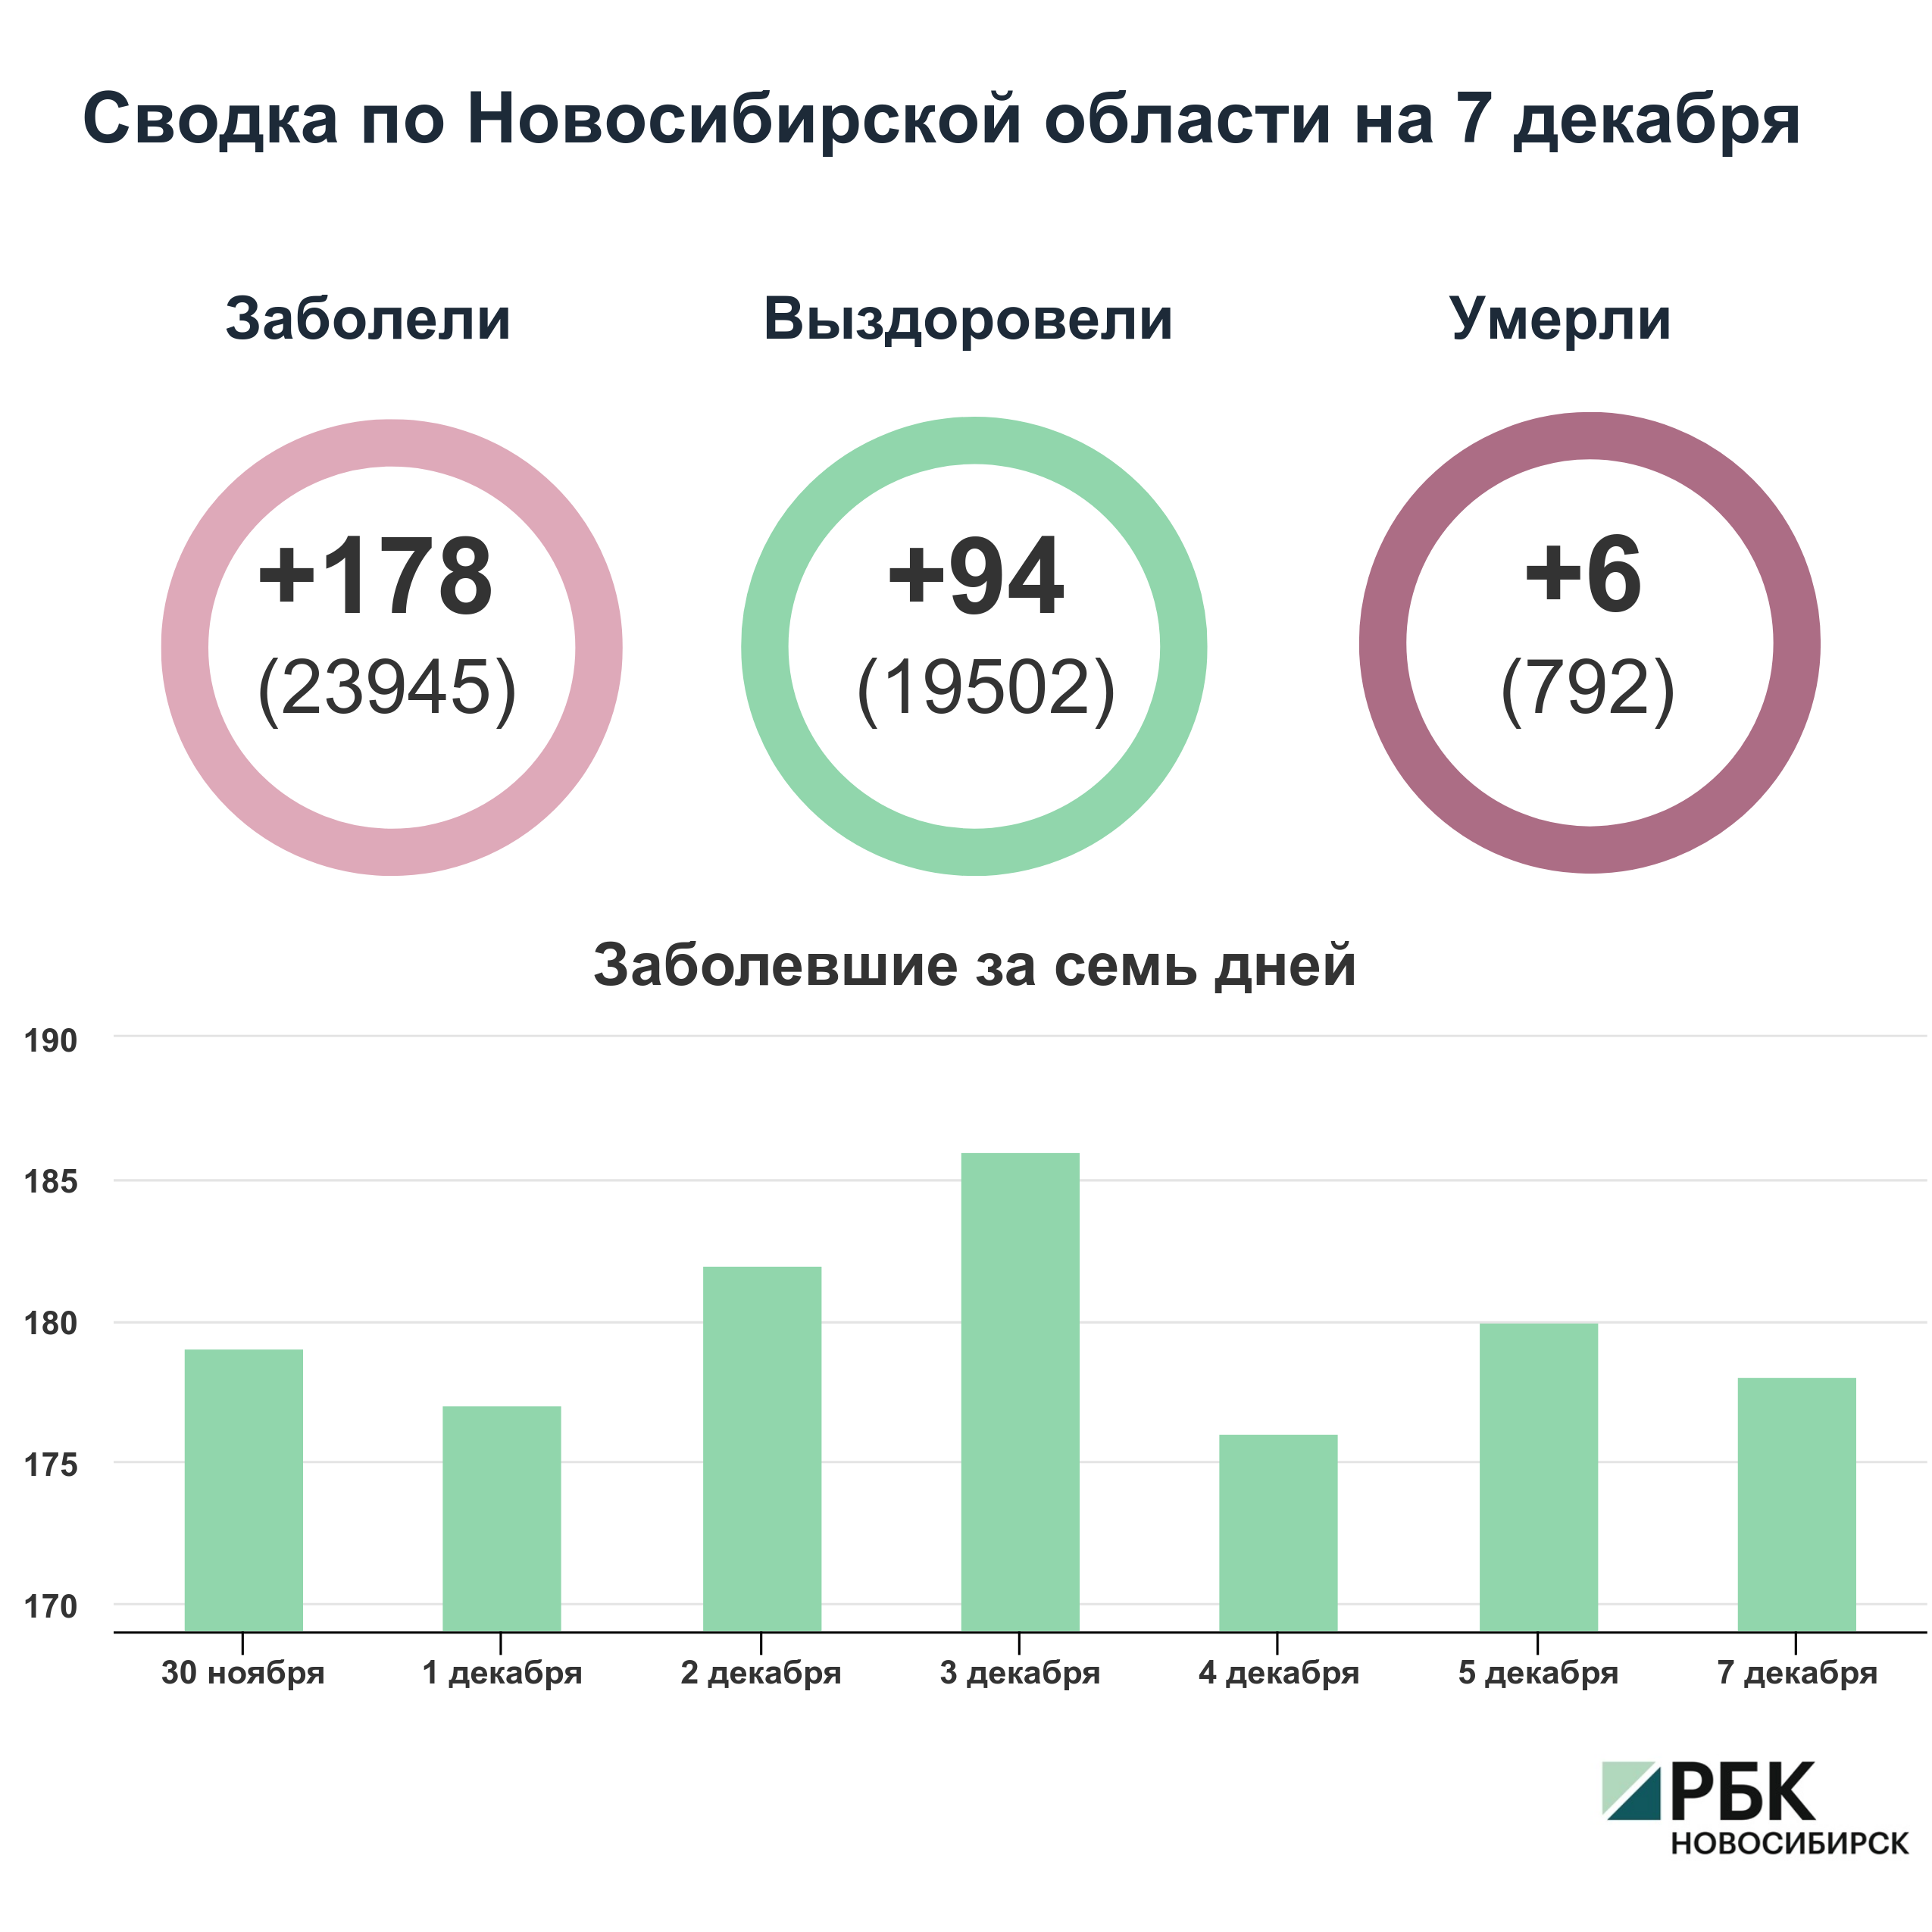 Коронавирус в Новосибирске: сводка на 7 декабря